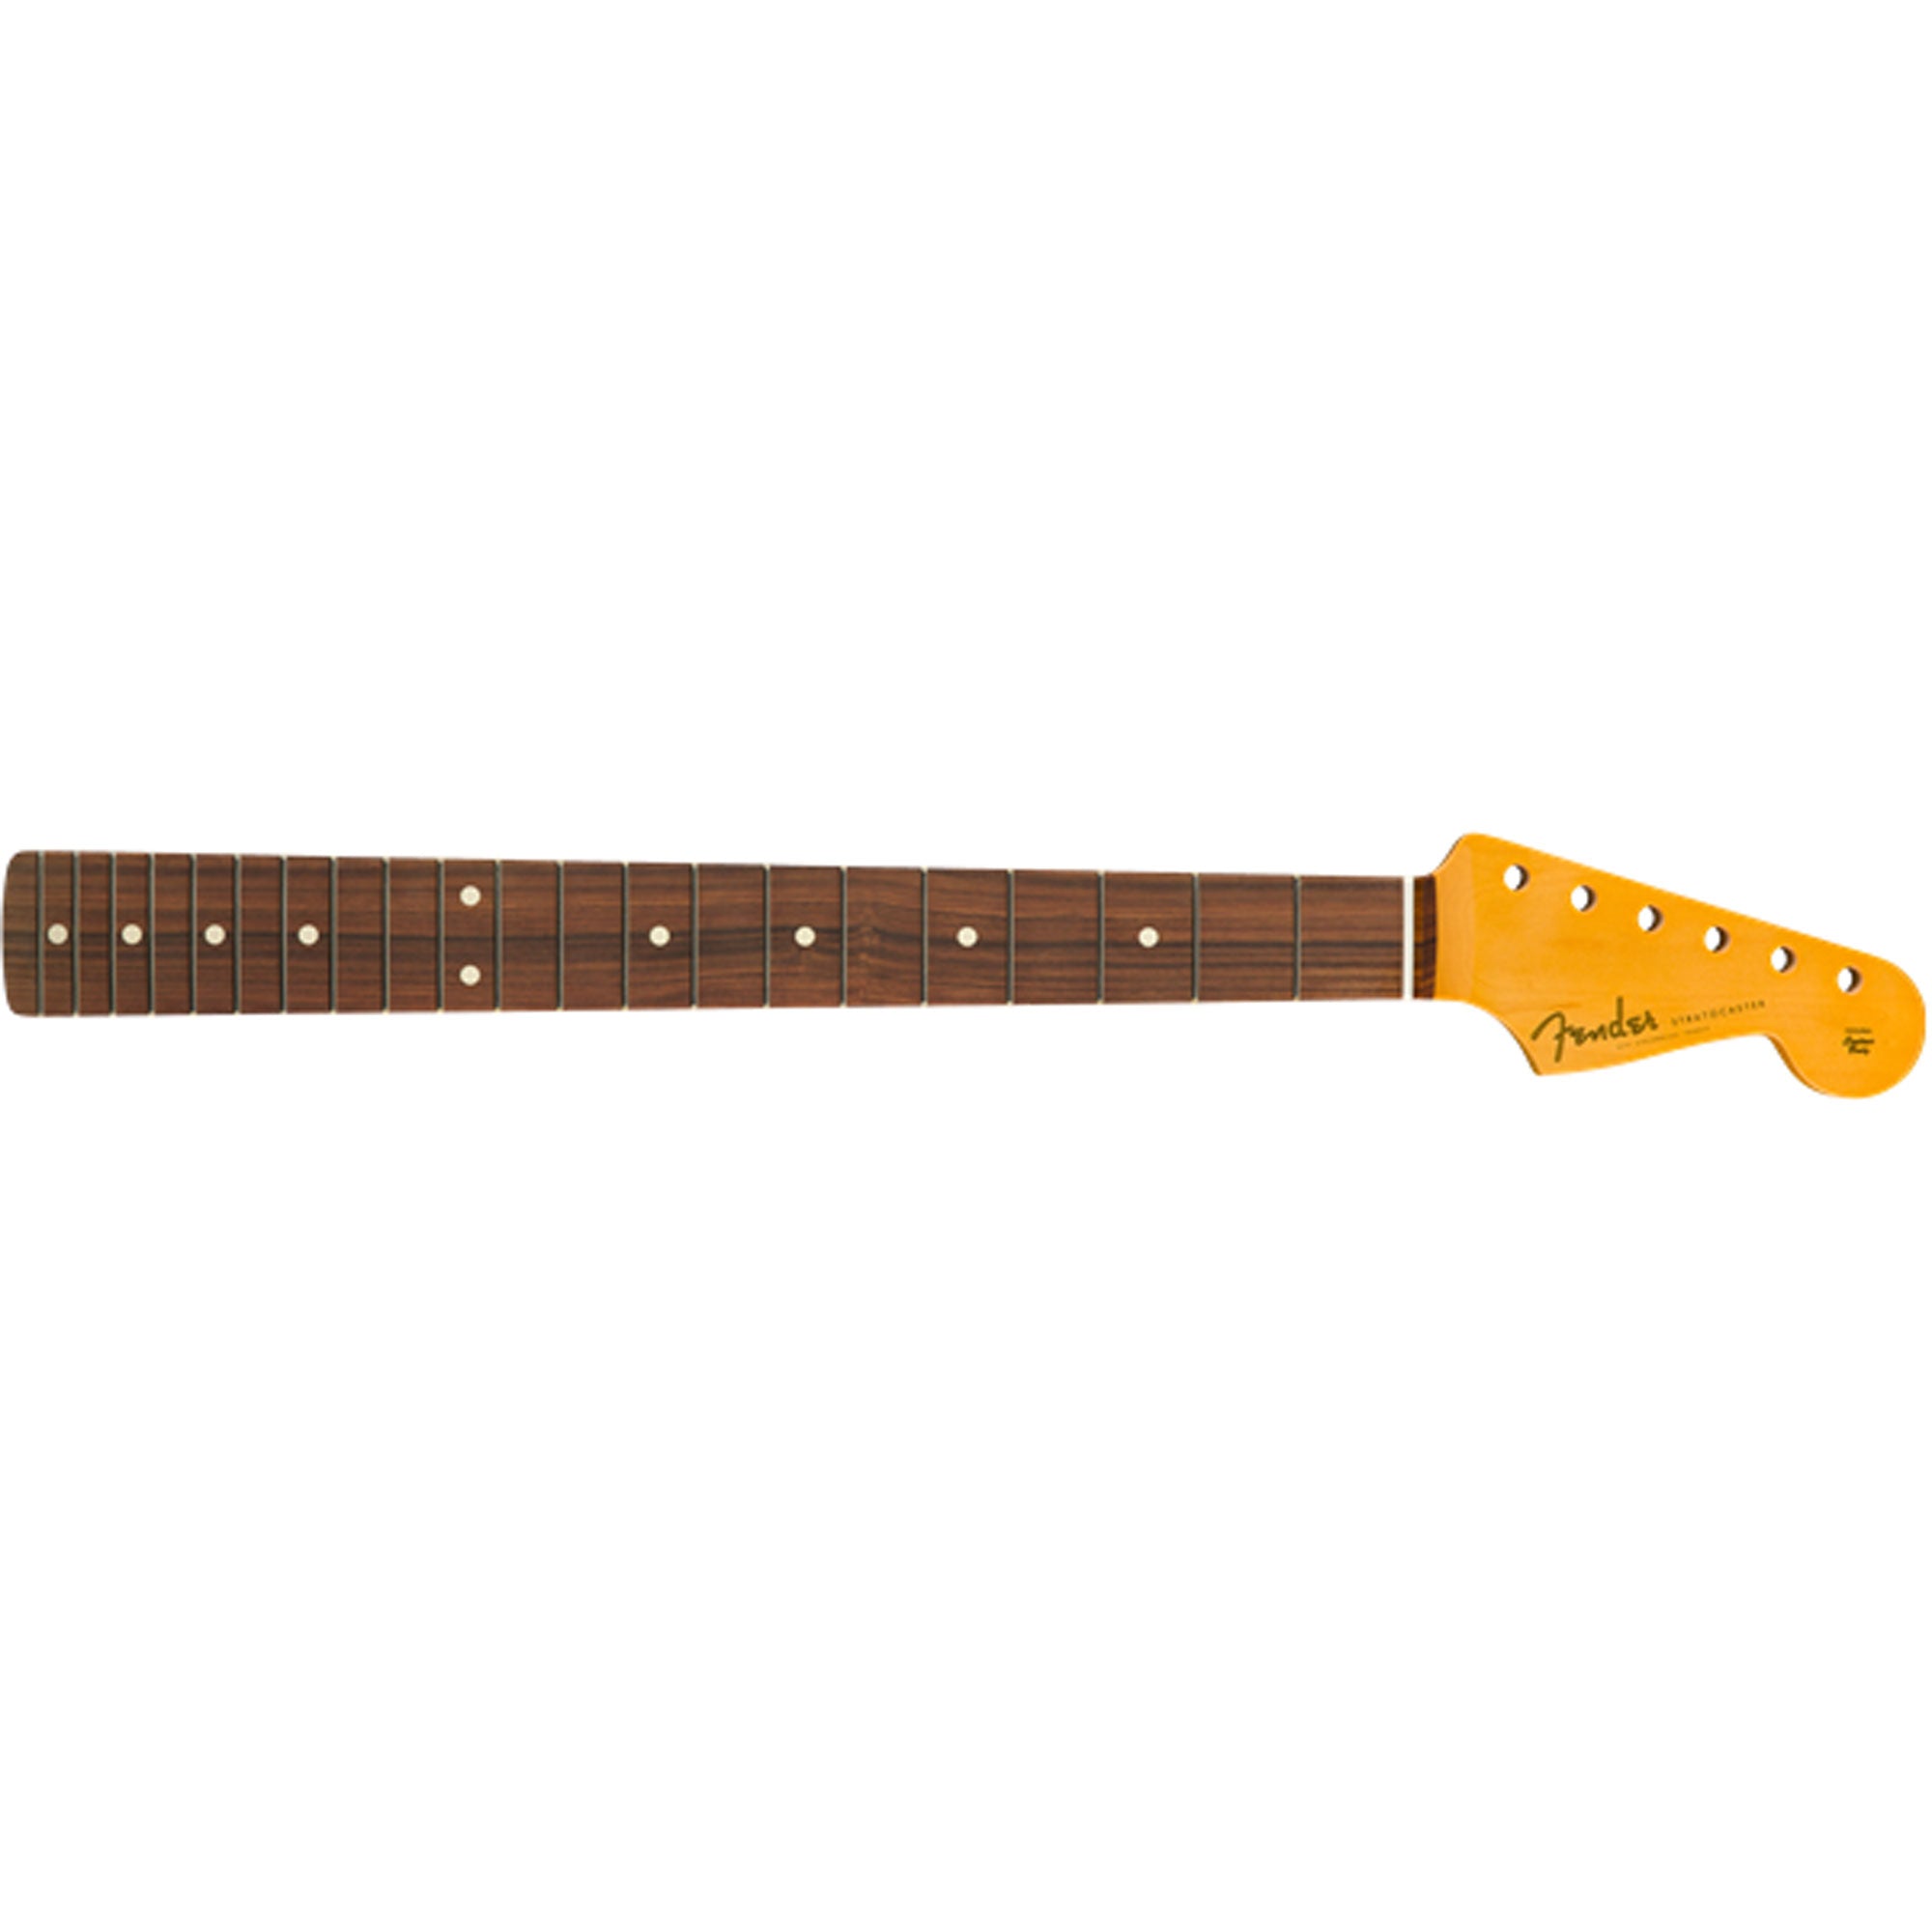 ☆お求めやすく価格改定☆ Warmoth製Fender Strat NeckフェンダーLIC